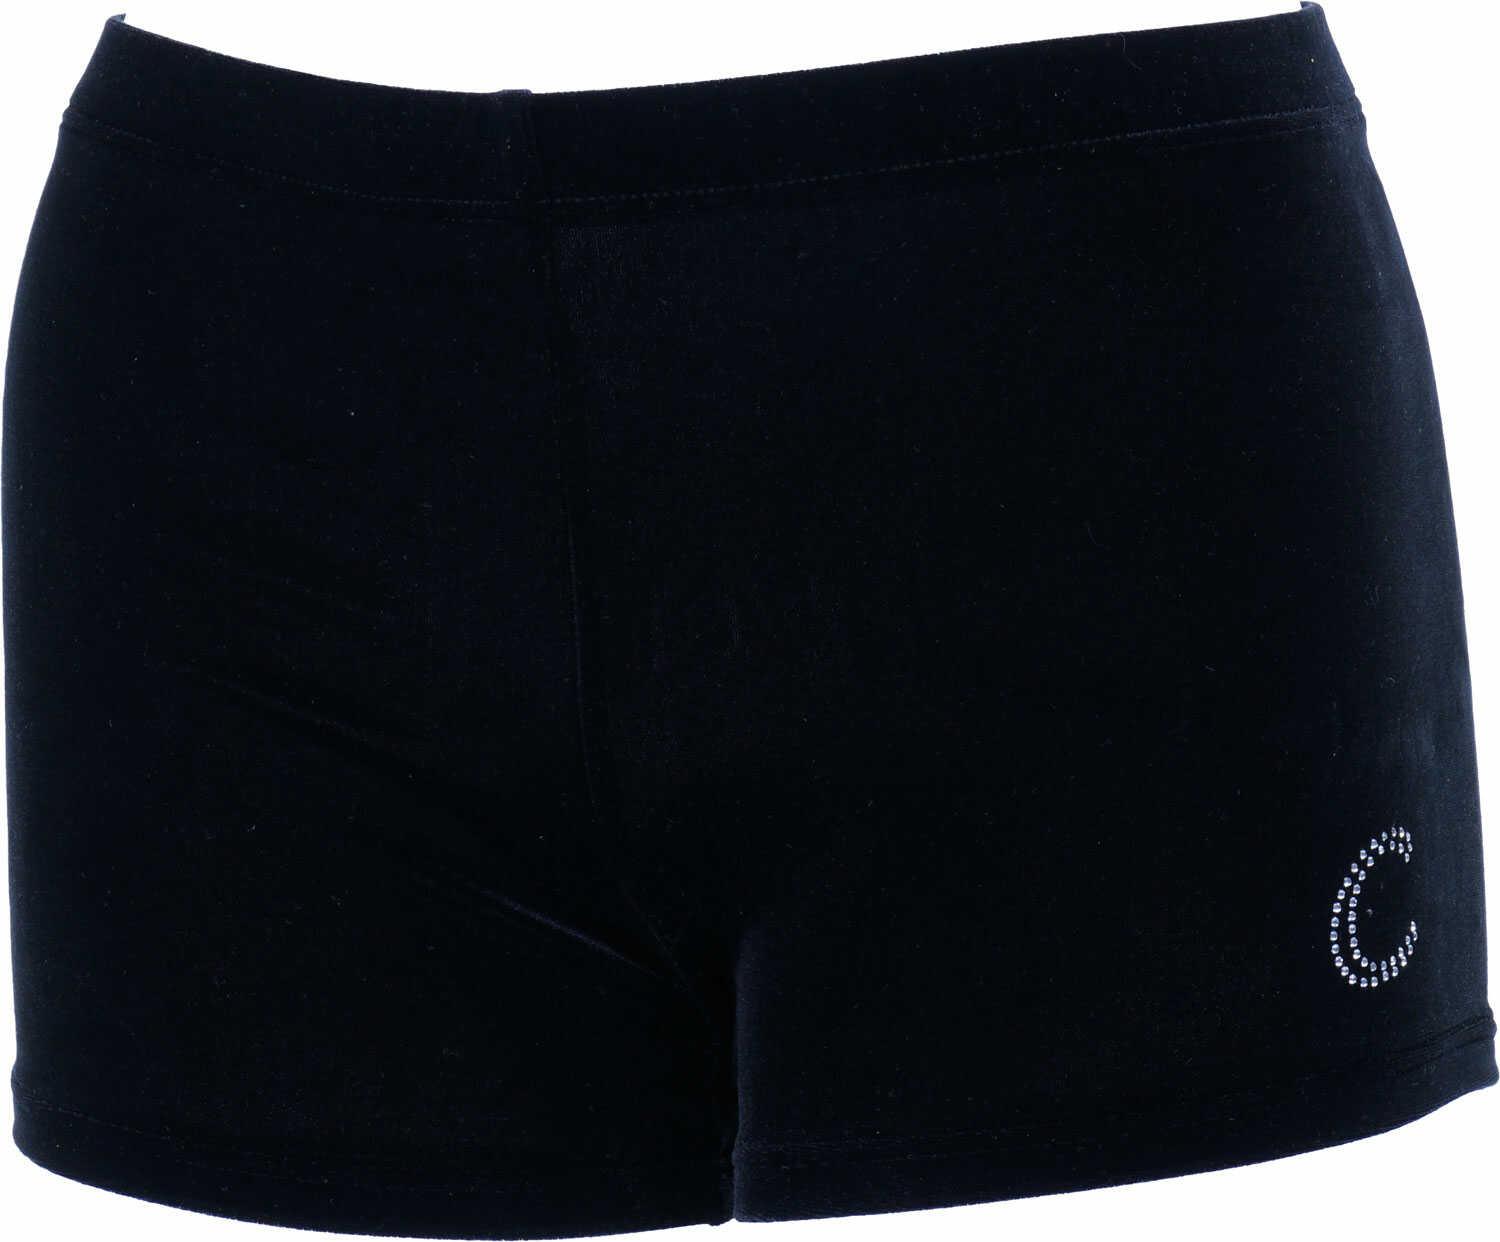 CEK Gymnastics shorts Black Velvet